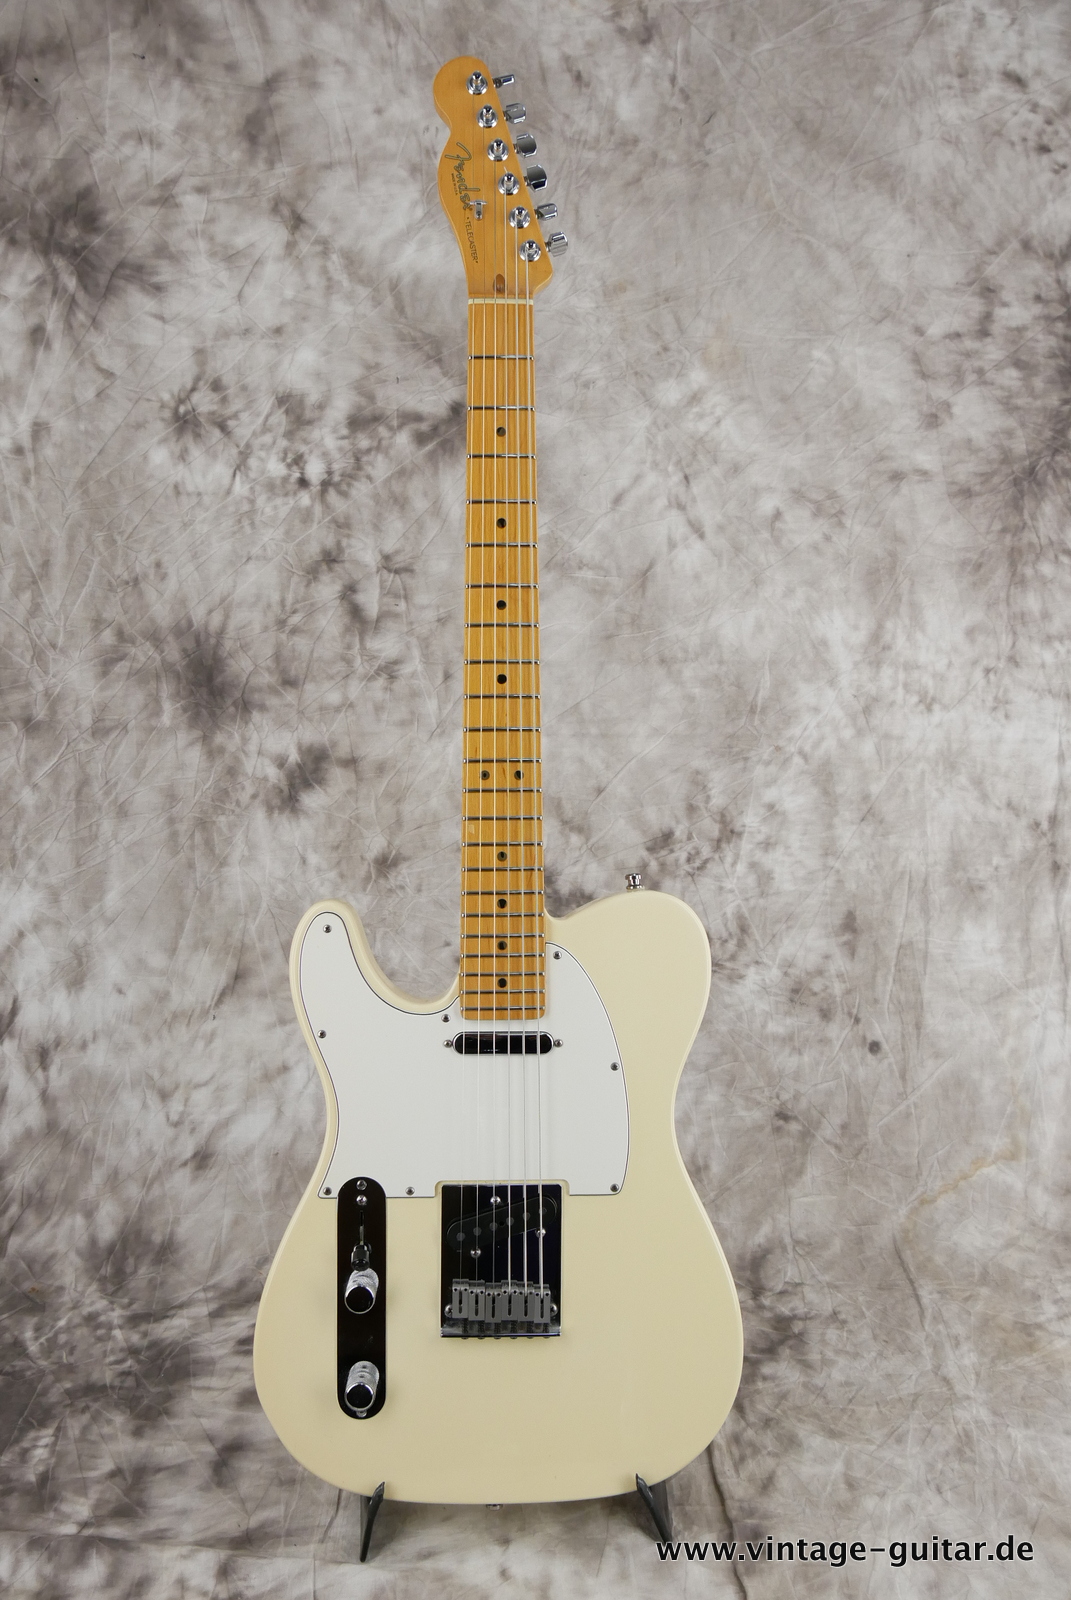 Fender_Telecaster_Standard_1999_olypic_white_left_handed-001.JPG